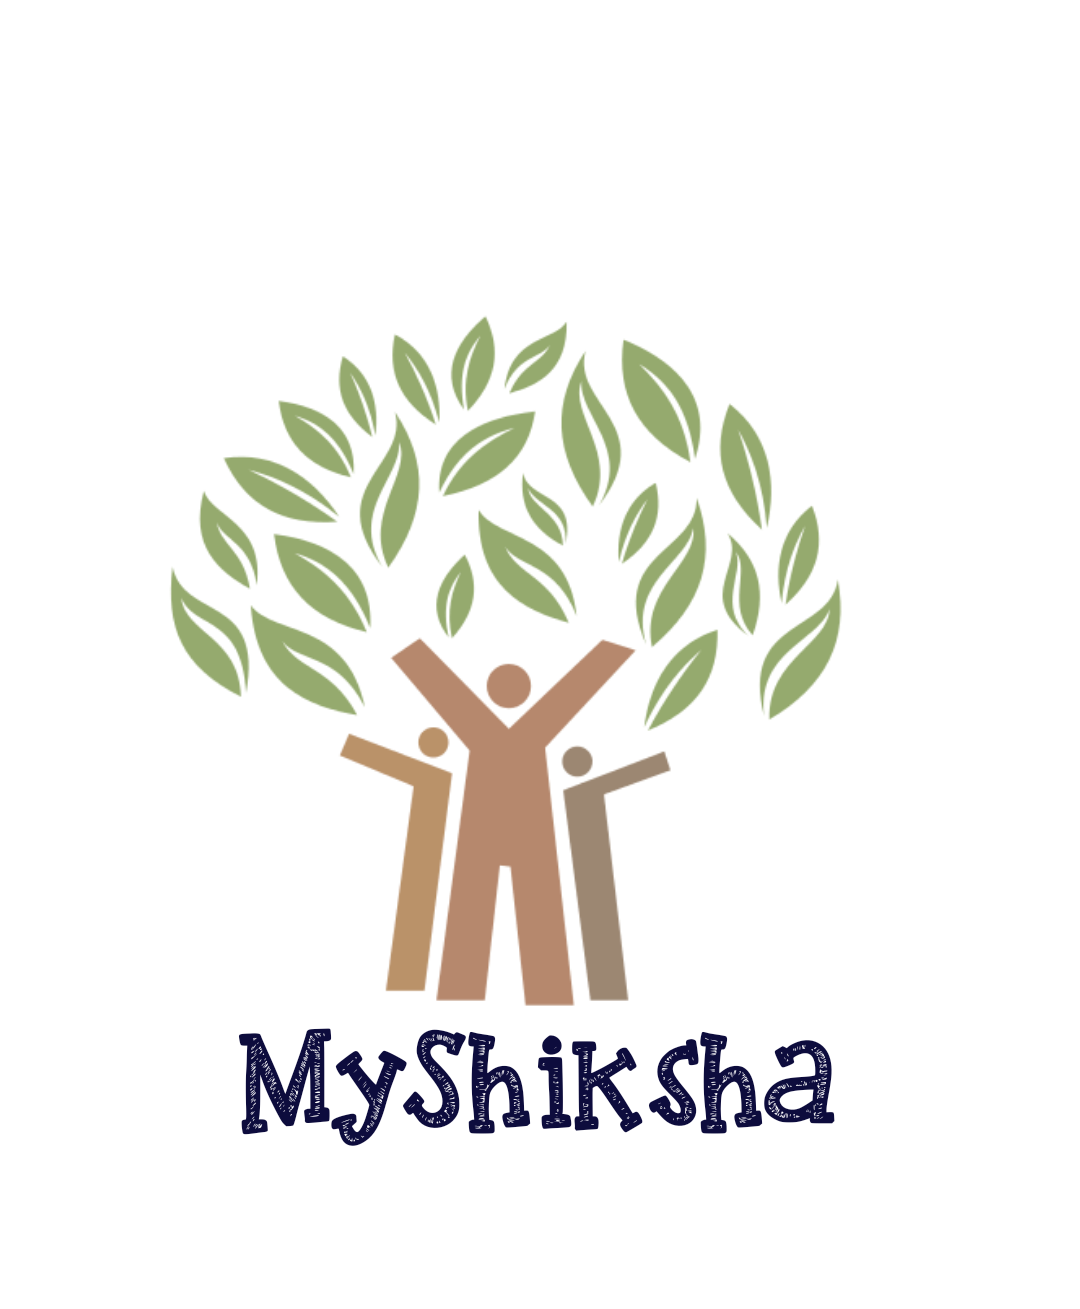 MyShiksha